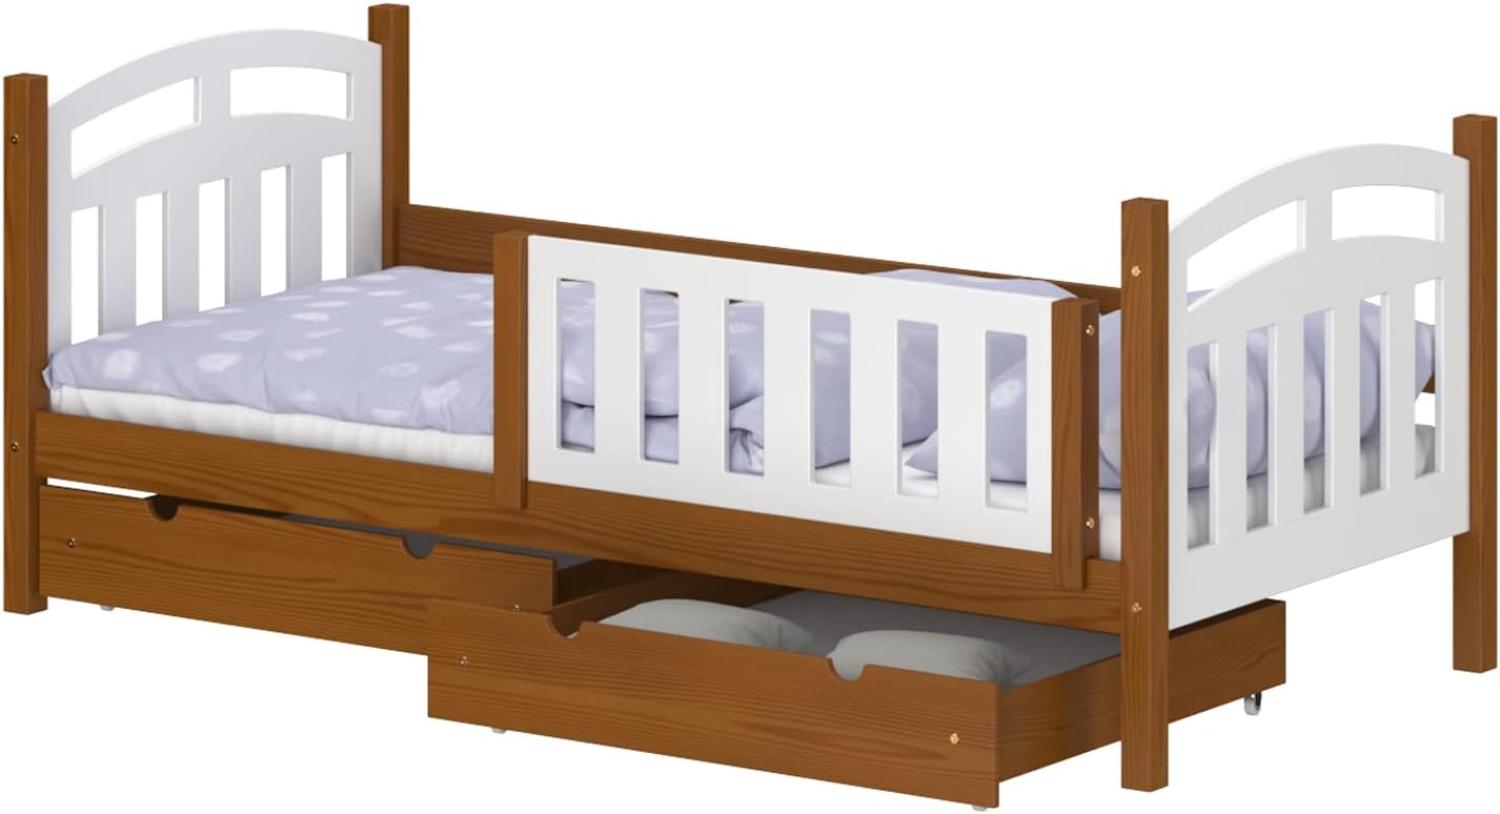 WNM Group Kinderbett mit Rausfallschutz Suzie - Jugenbett aus Massivholz - Bett mit 2 Schubladen für Mädchen und Jungen - Funktionsbett 180x80 cm - Braun Bild 1